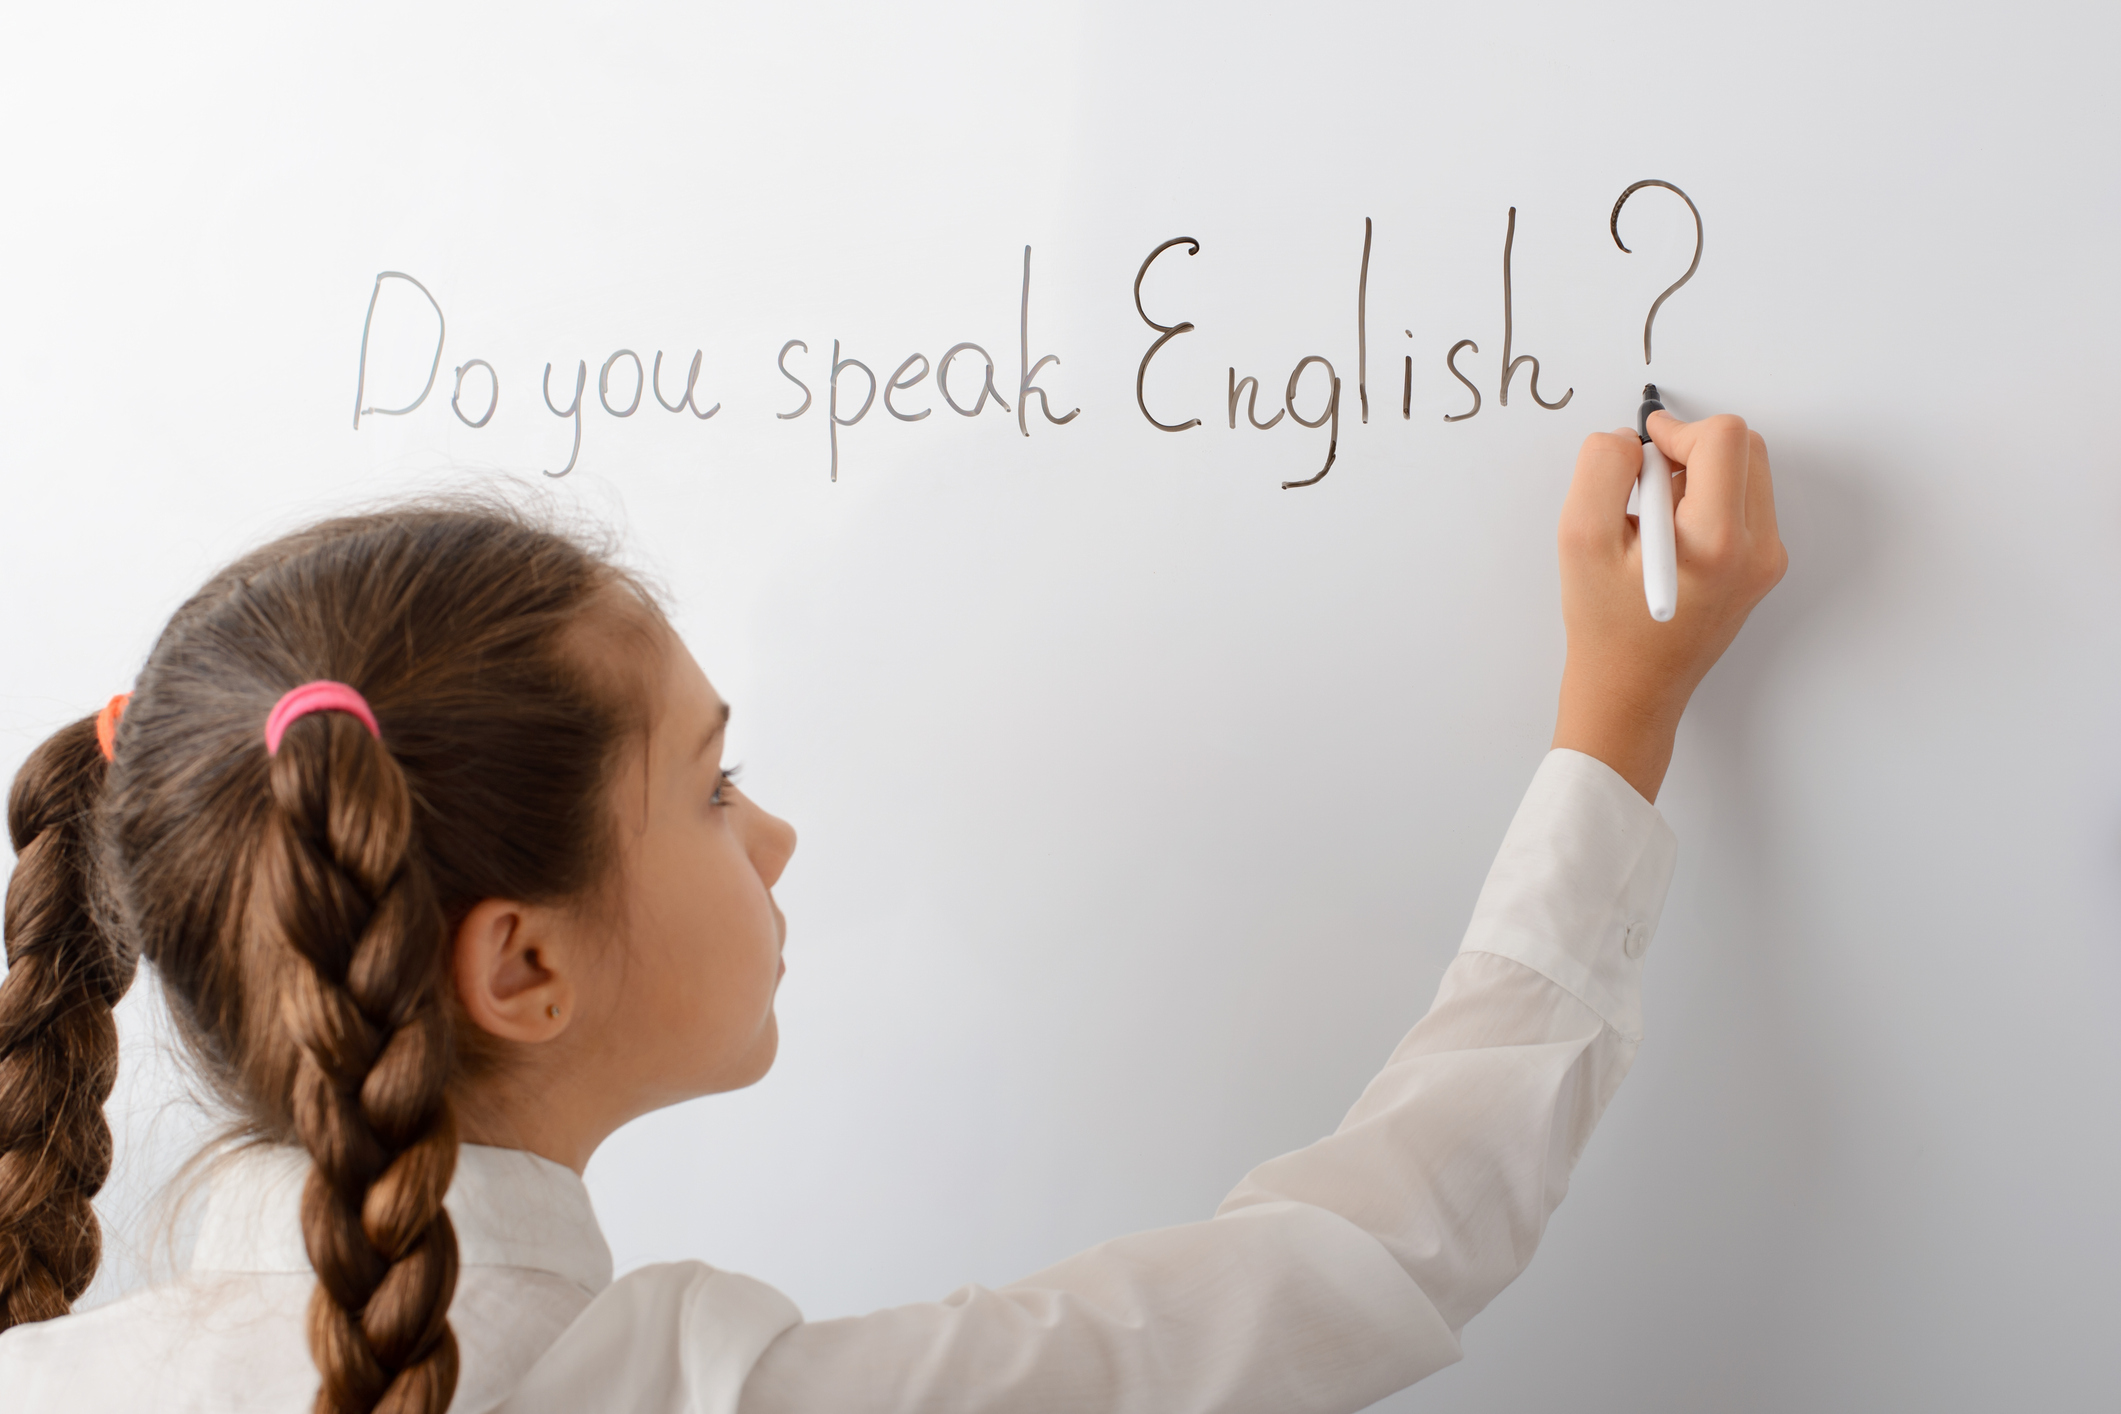 Como usar o futuro em inglês – Inglês Winner